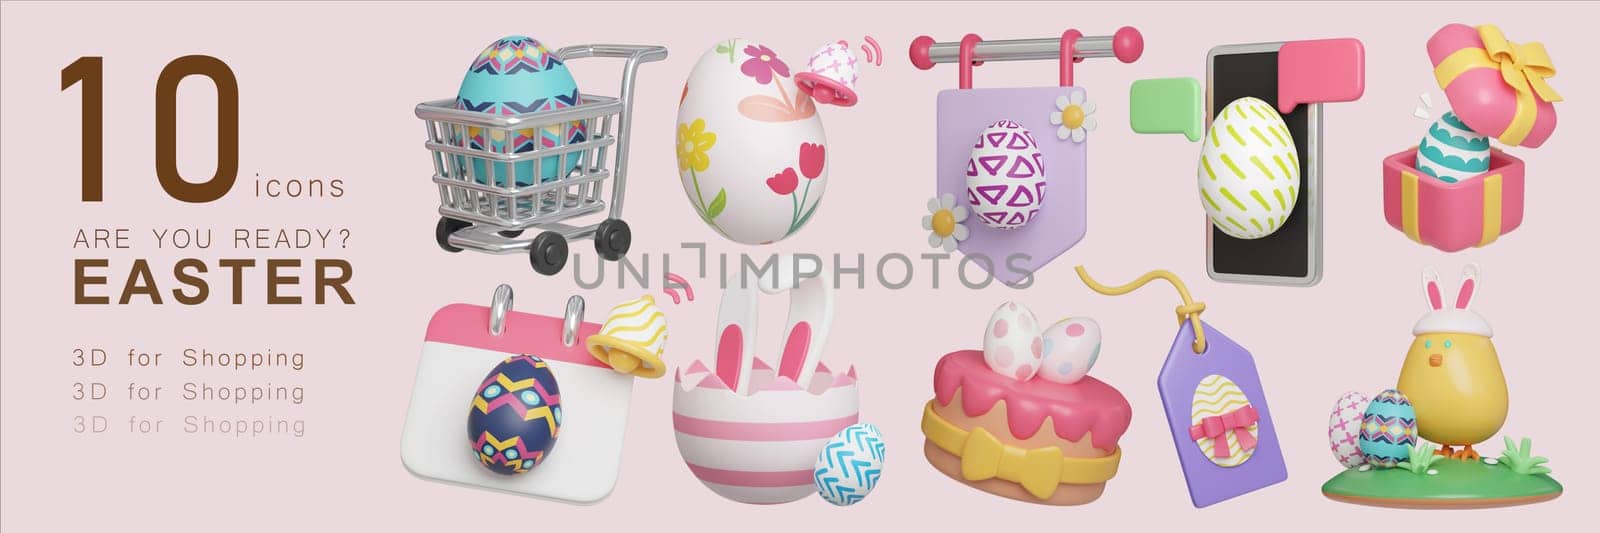 3D illustrated cute festive set of shopping Easter Egg icons. cart, egg, sign, gift, calendar, rabbit, cake, tags, chick, 3D Illustration Easter festive..